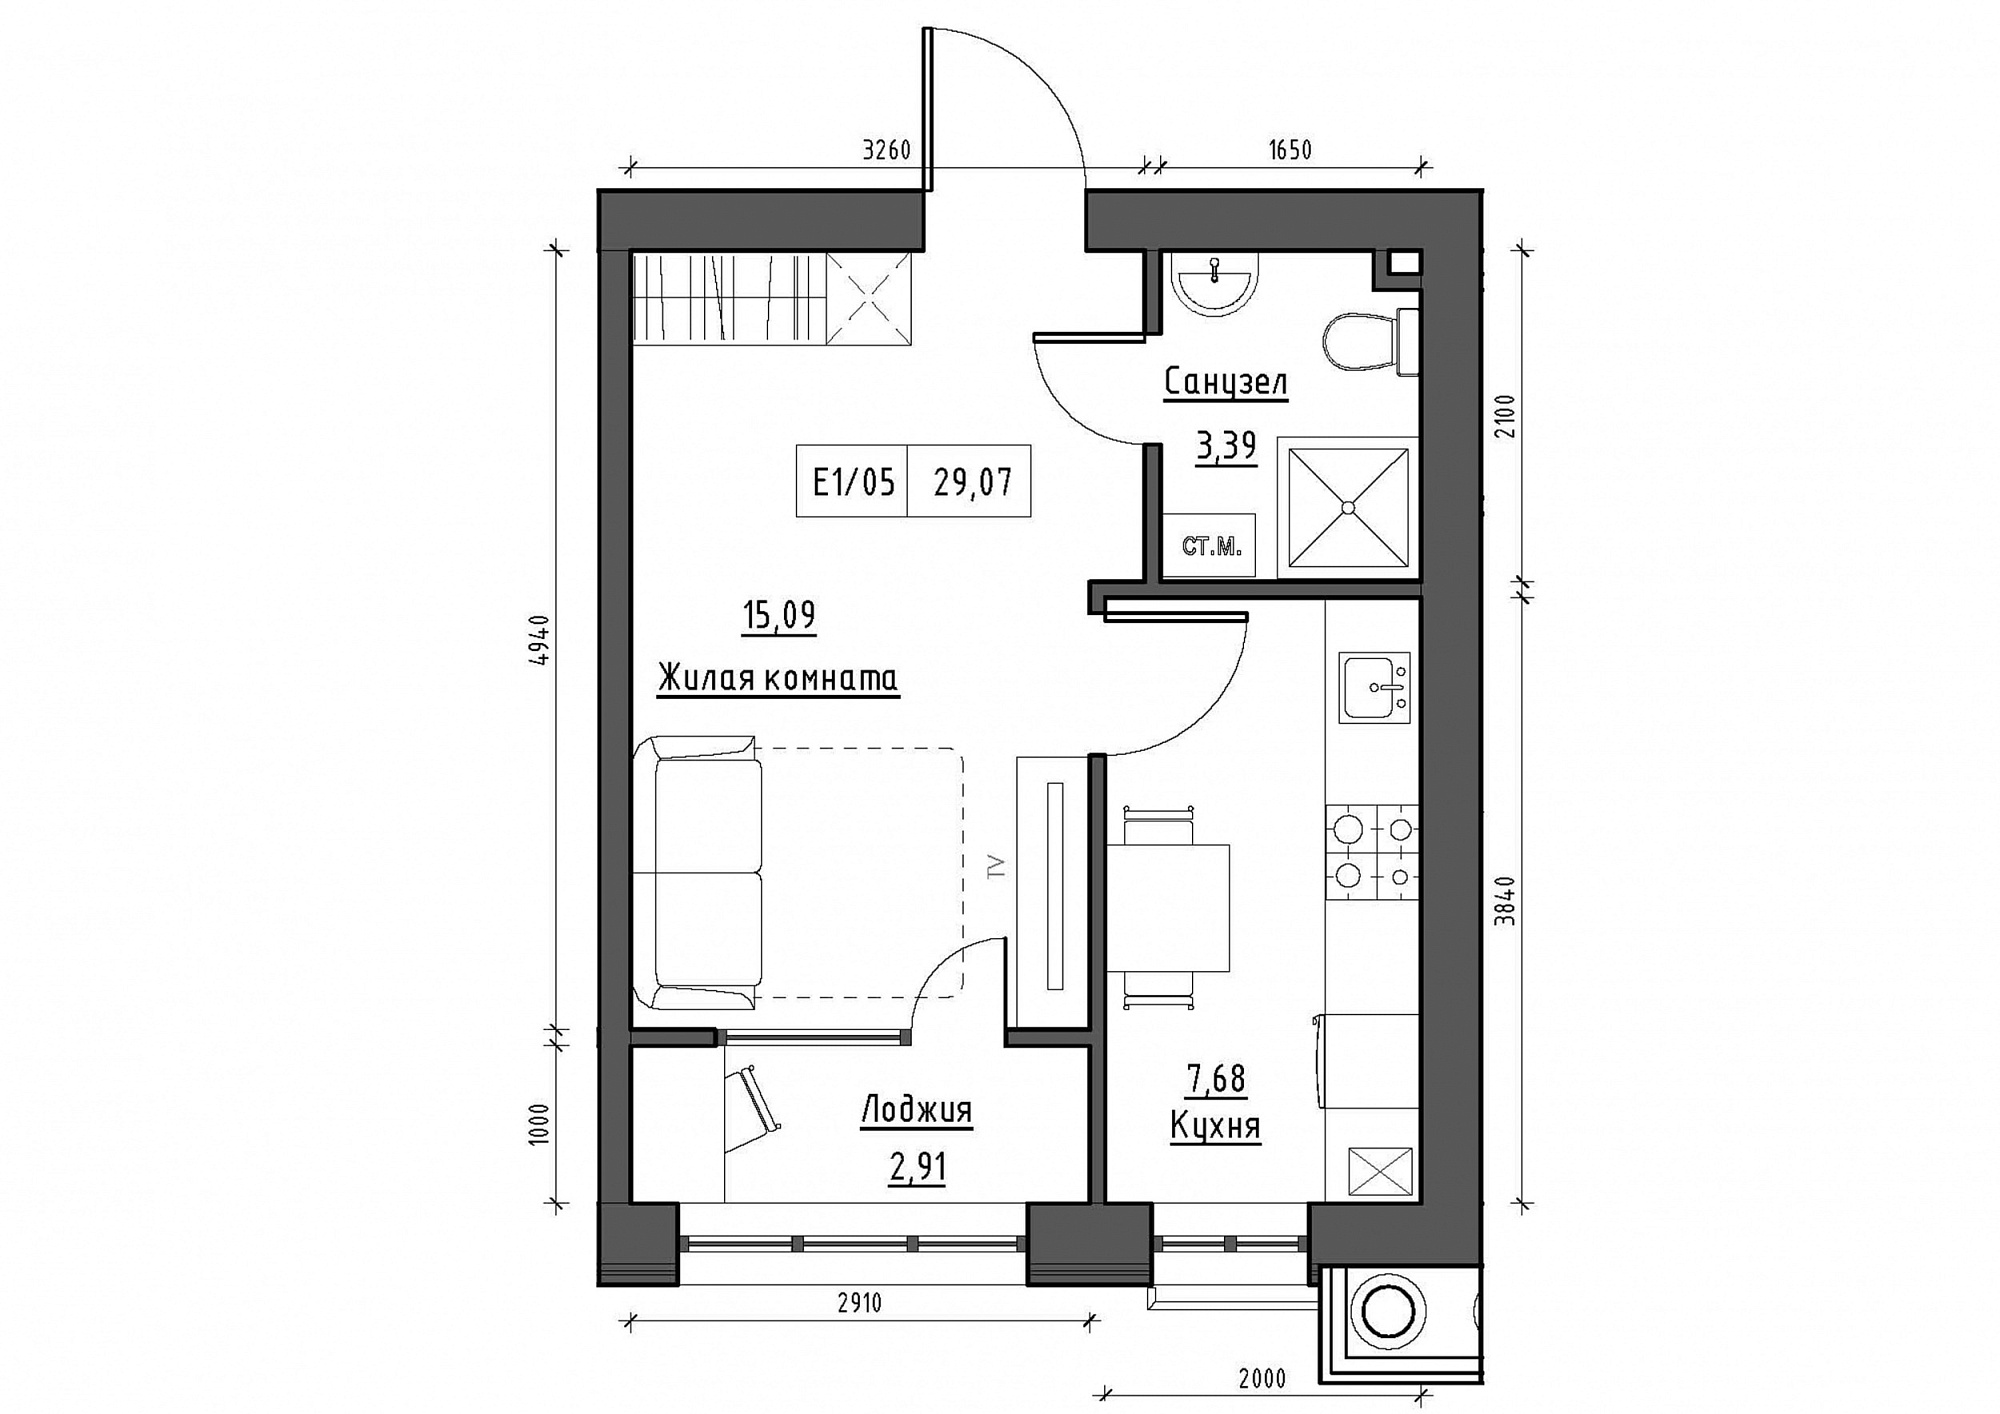 Планування 1-к квартира площею 29.07м2, KS-011-03/0009.